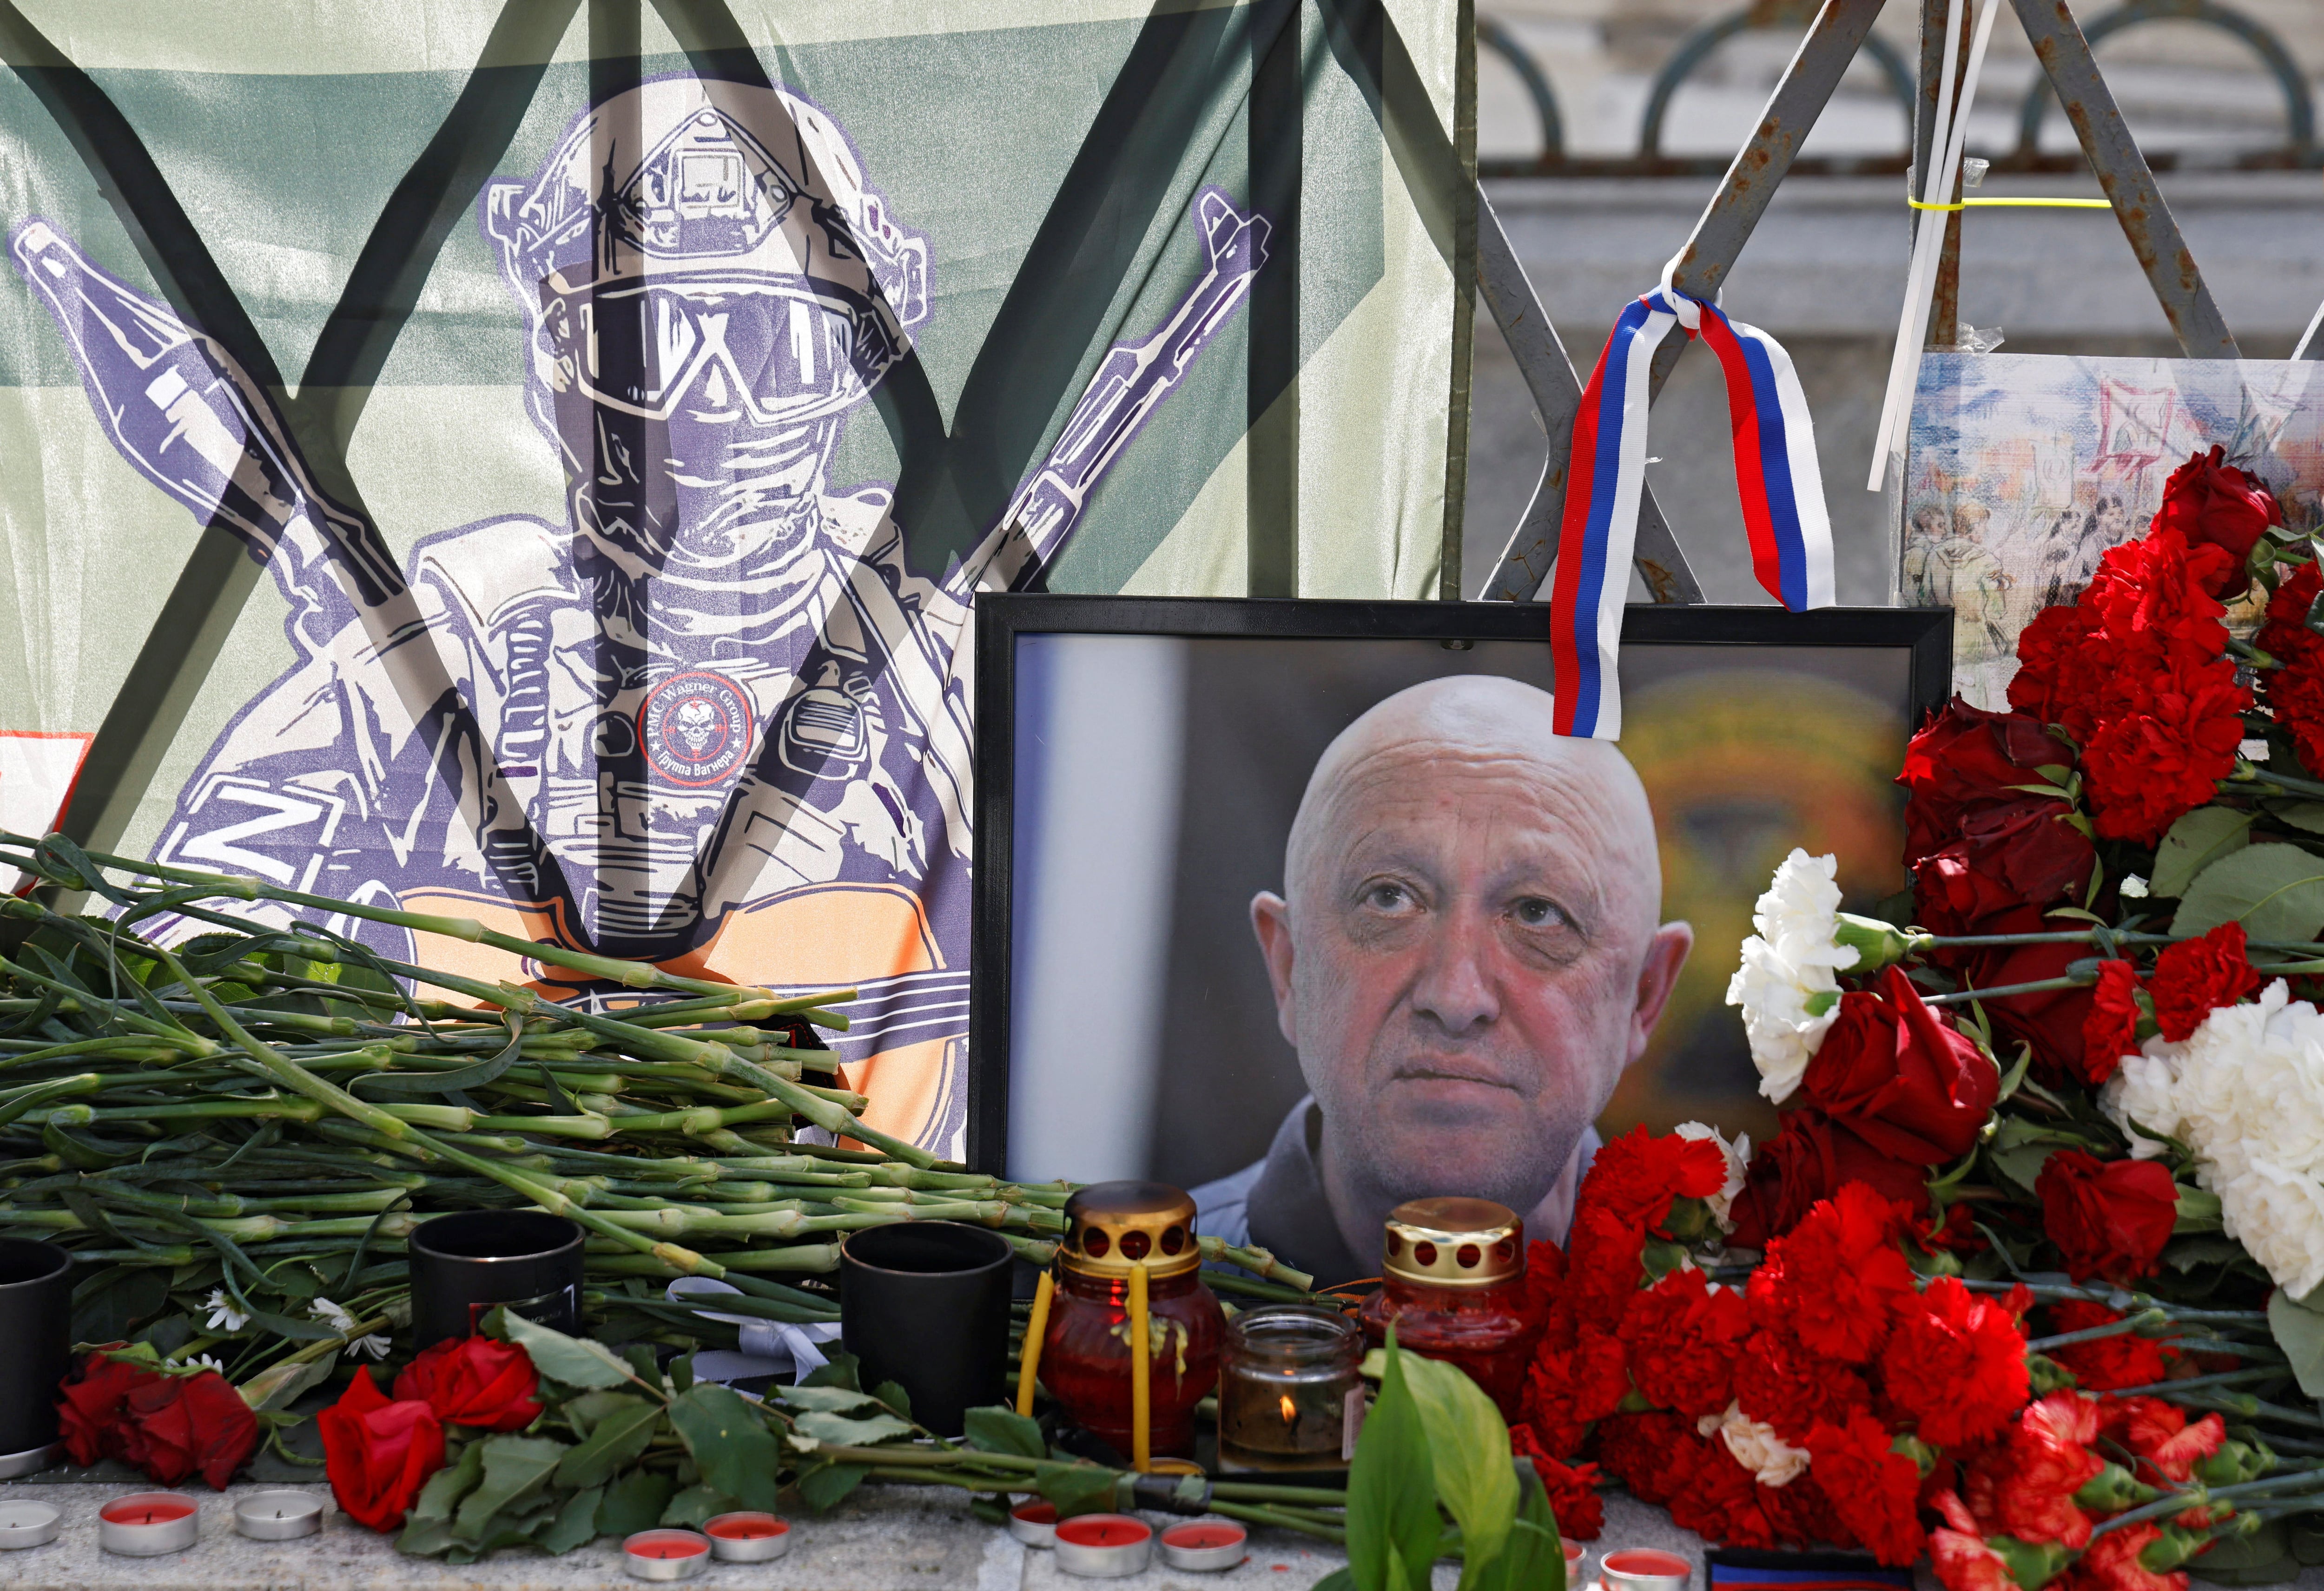 Un monumento improvisado establecido después de la presunta muerte de Yevgeny Prigozhin, jefe del grupo mercenario Wagner, en un accidente aéreo, en Moscú, Rusia 25 de agosto 2023. REUTERS/Maxim Shemetov